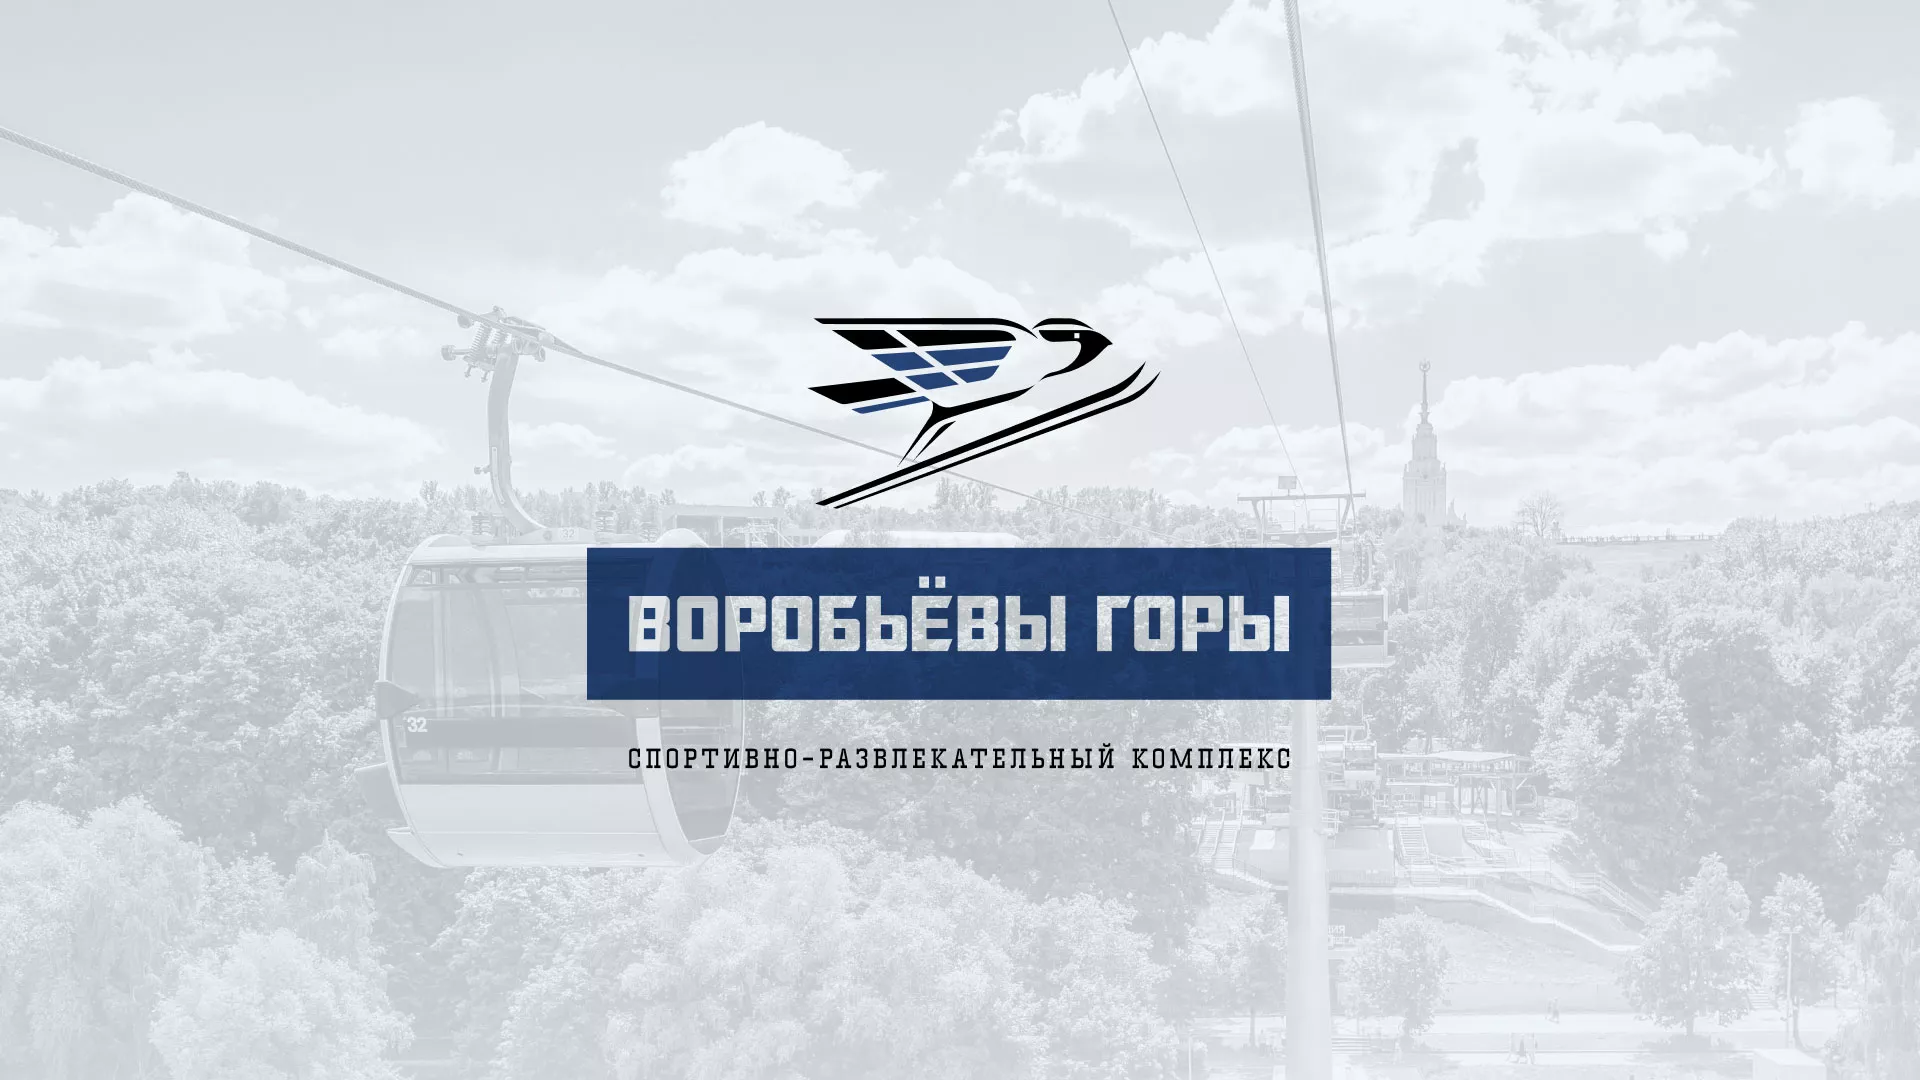 Разработка сайта в Борисоглебске для спортивно-развлекательного комплекса «Воробьёвы горы»